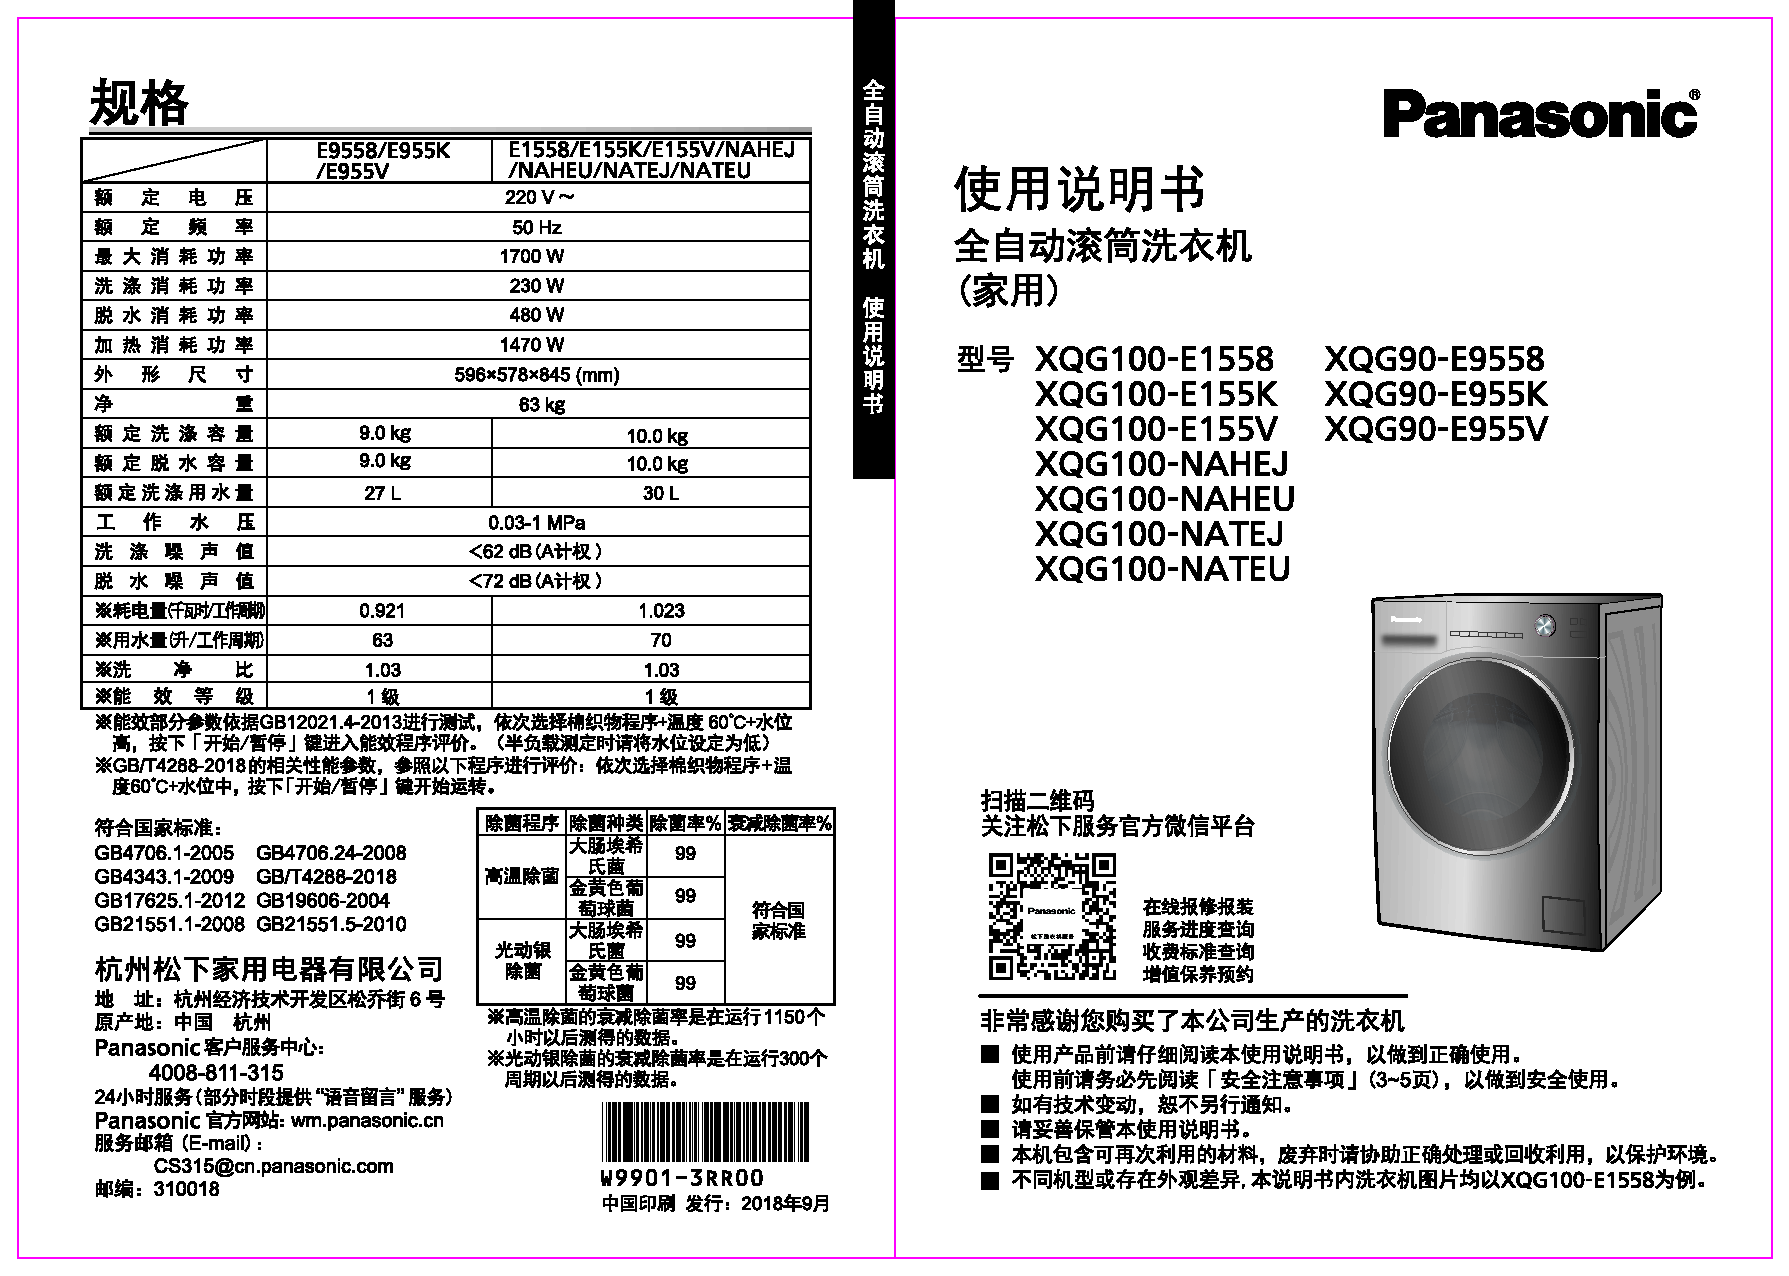 松下 Panasonic XQG100-NAHEJ, XQG90-E955K 使用说明书 封面